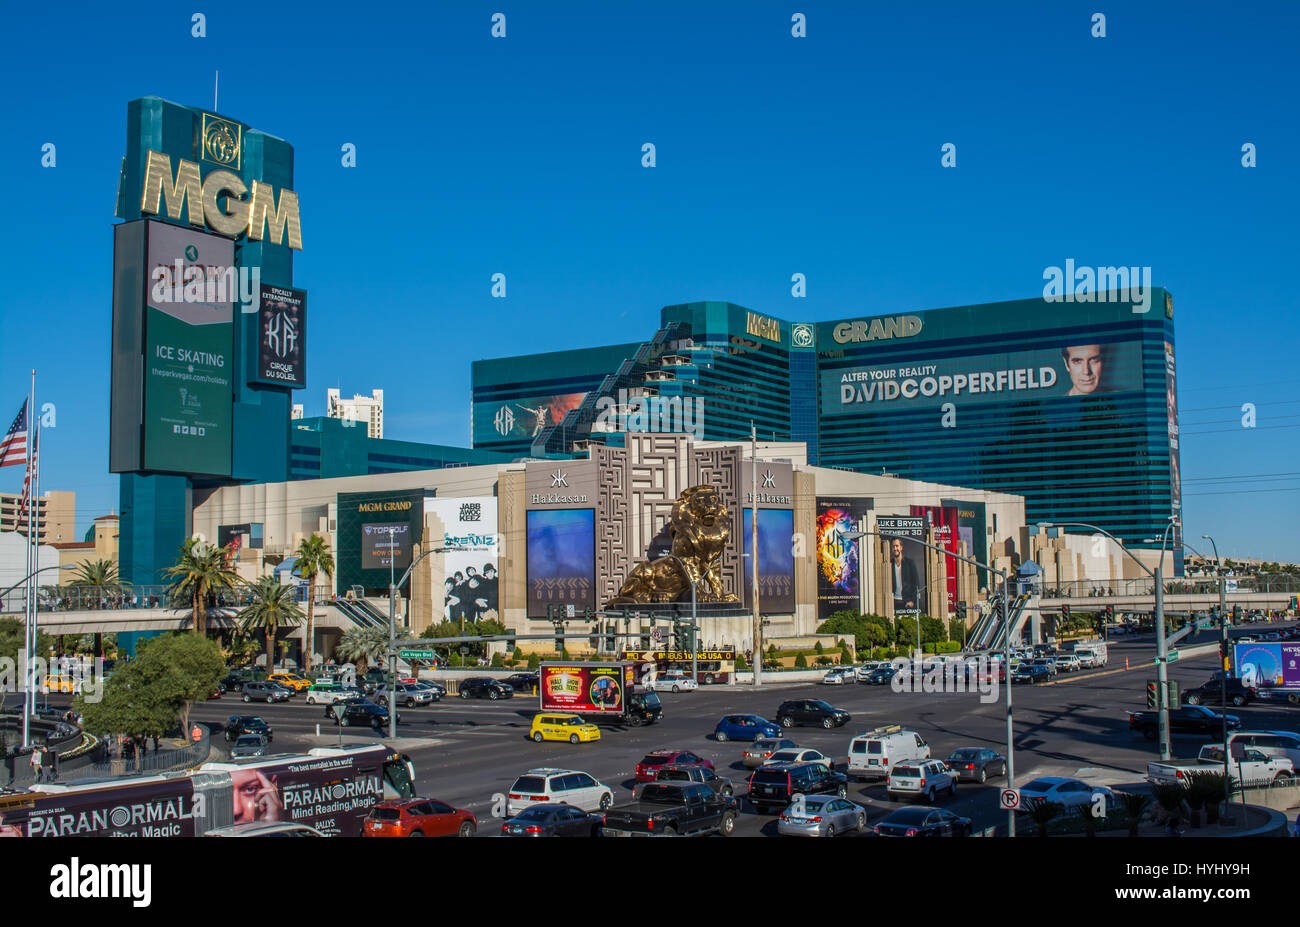 El MGM Grand Hotel and Casino Las Vegas Blvd S, Las Vegas, Nevada, EE.UU. - 25 NOV 2016: a través de la intersección de Las Vegas Boulevard y Tropicana Foto de stock